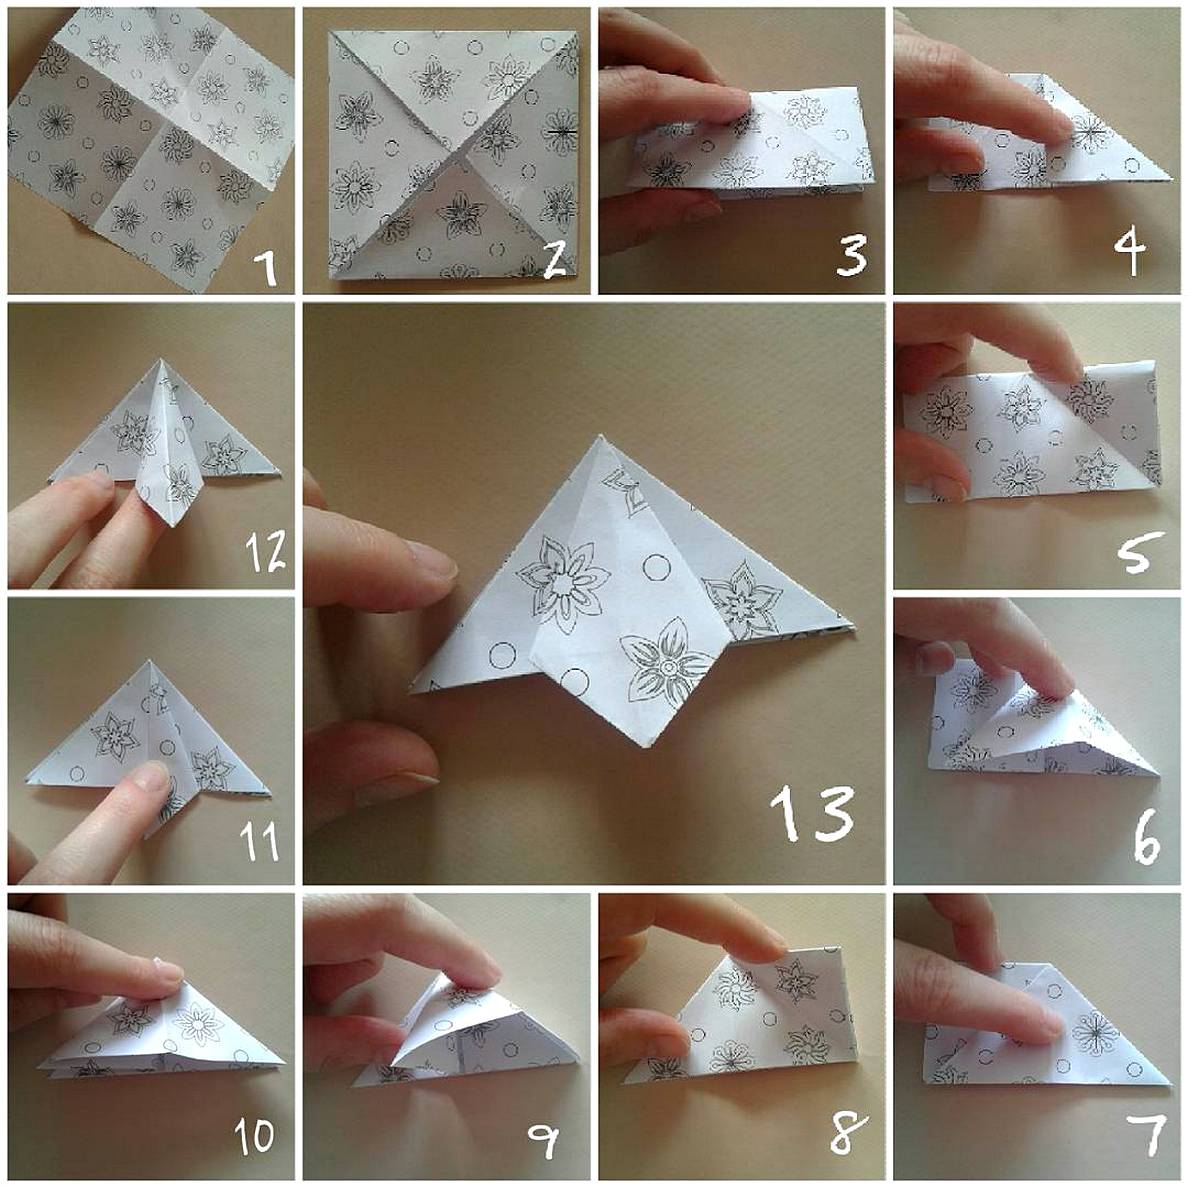 Ide Kreatif Membuat Hiasan Dinding Kamar Buatan Sendiri Dari Kertas Origami